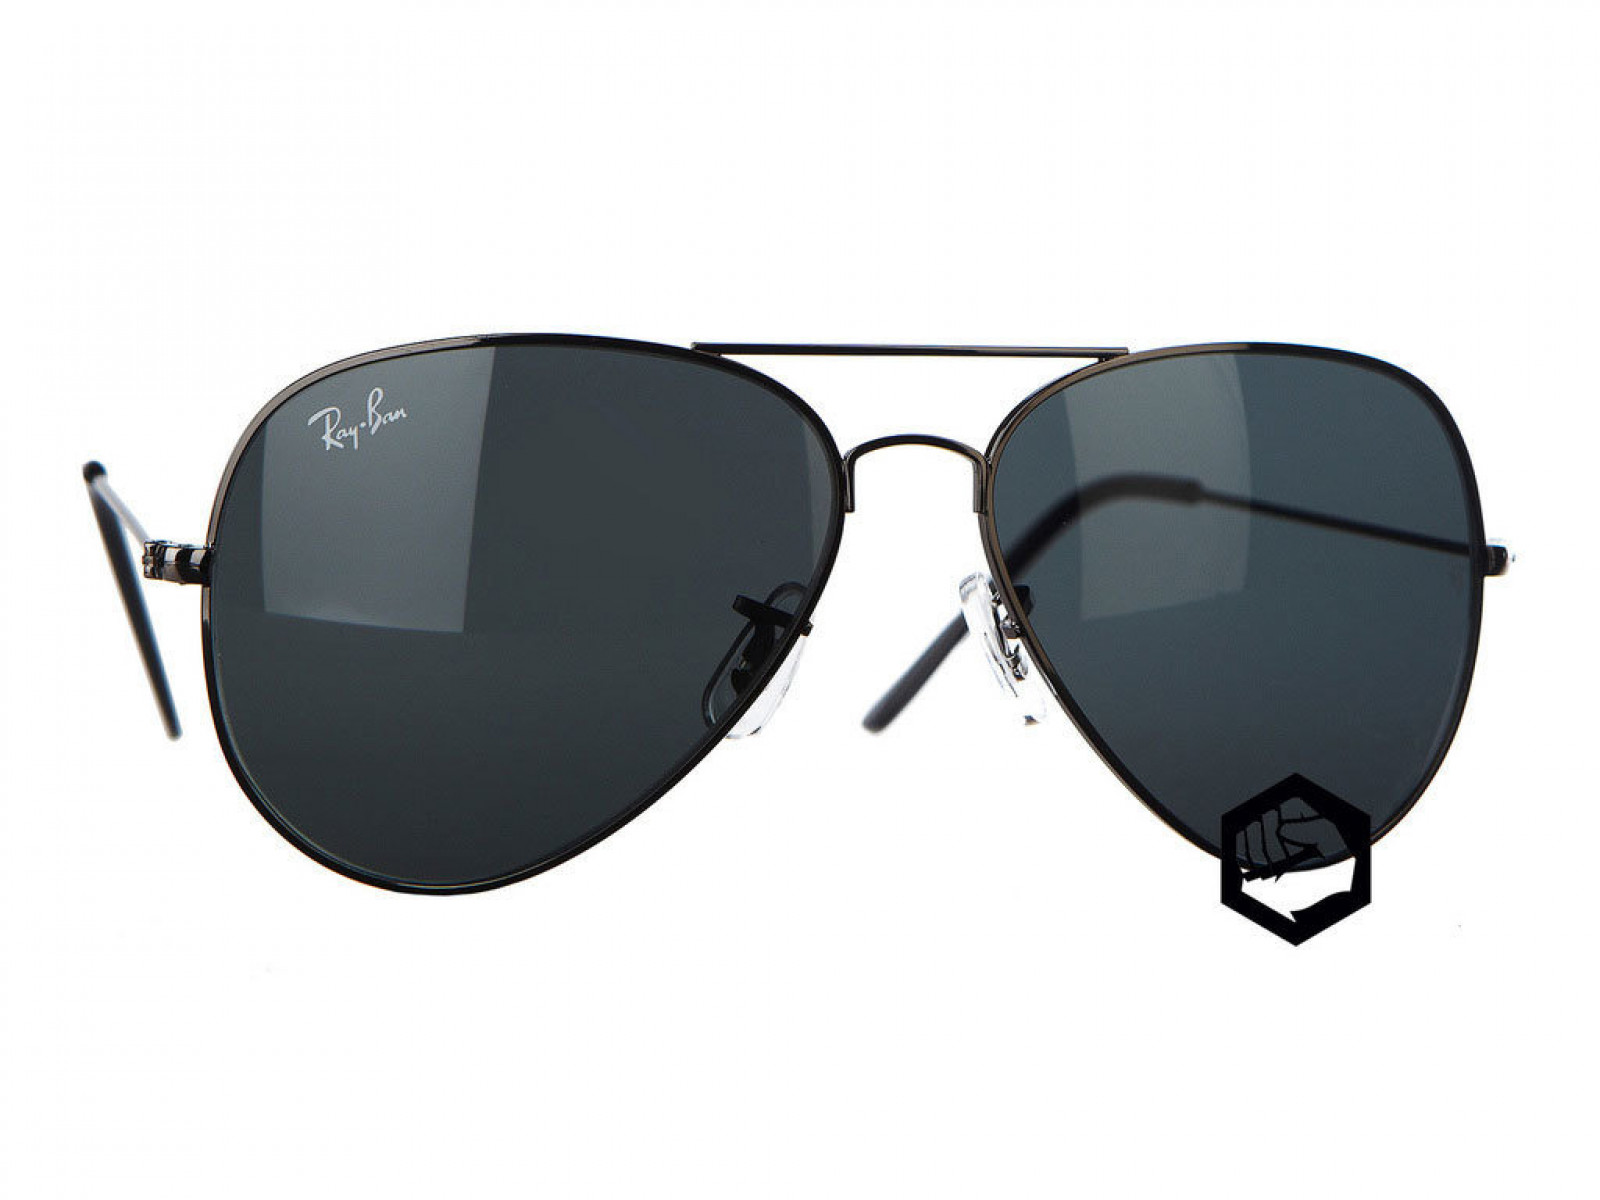 Купить темные очки. Очки ray ban Авиаторы черные. Exalt Cycle Exzenit p140 солнцезащитные очки. Очки Авиаторы du103 Dunhill. Очки мужские солнцезащитные 2021вайфартеры.